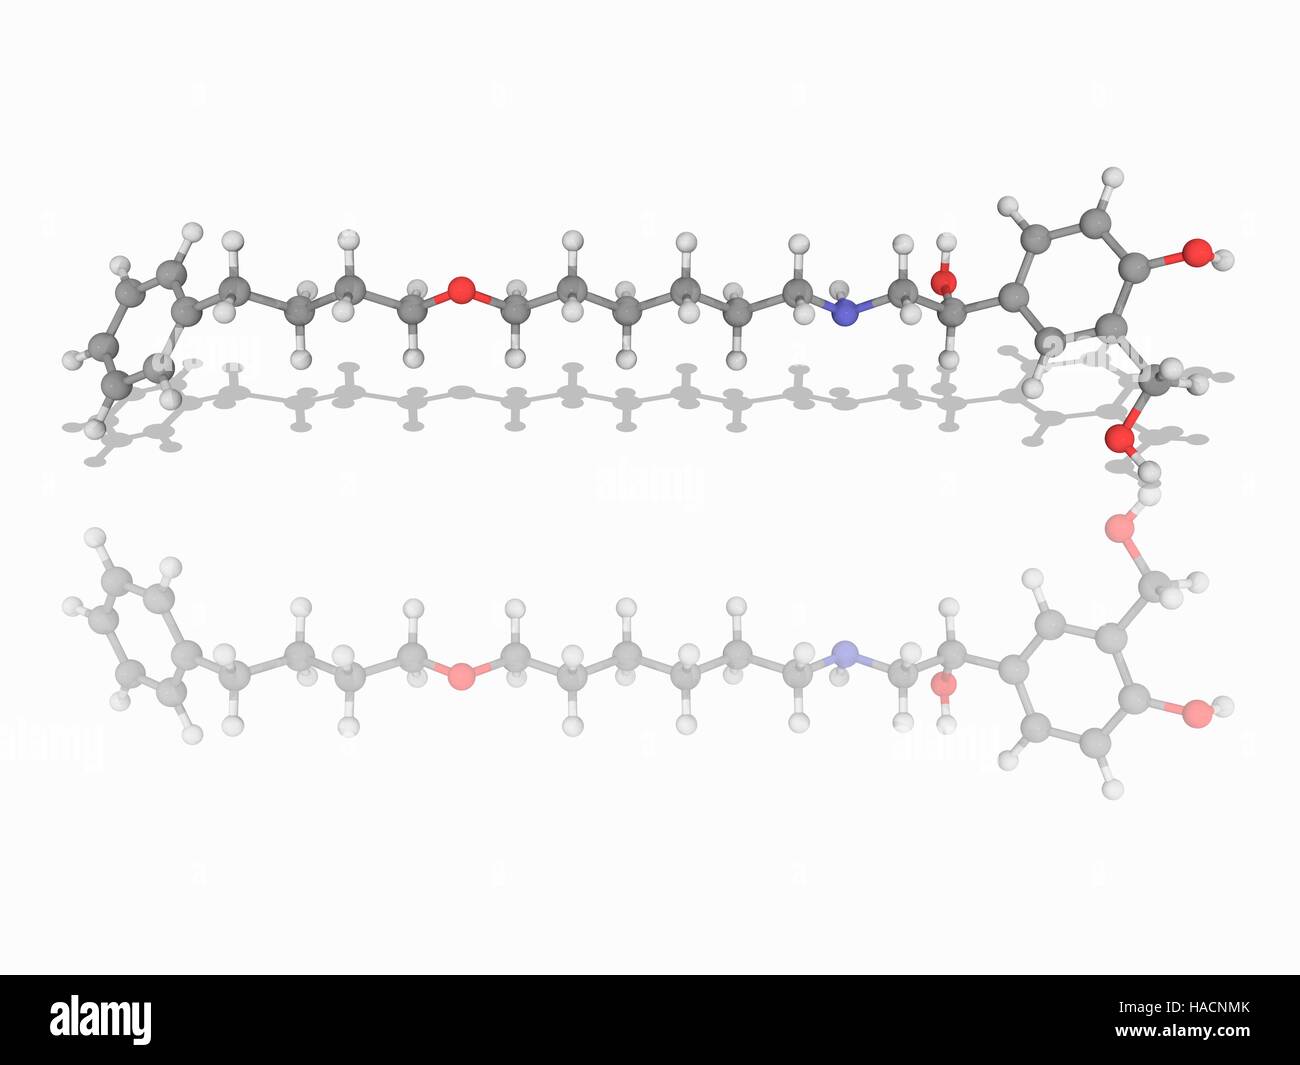 Salmeterol. Molekulares Modell des Wirkstoff Salmeterol (C25. H37. N.O4), vermarktet als Serevent, einem langwirksamen beta2-adrenergen Rezeptor Agonist für Asthma und chronisch obstruktive Lungenerkrankung (COPD) eingesetzt. Atome als Kugeln dargestellt werden und sind farblich gekennzeichnet: Kohlenstoff (grau), Wasserstoff (weiß), Stickstoff (blau) und Sauerstoff (rot). Abbildung. Stockfoto